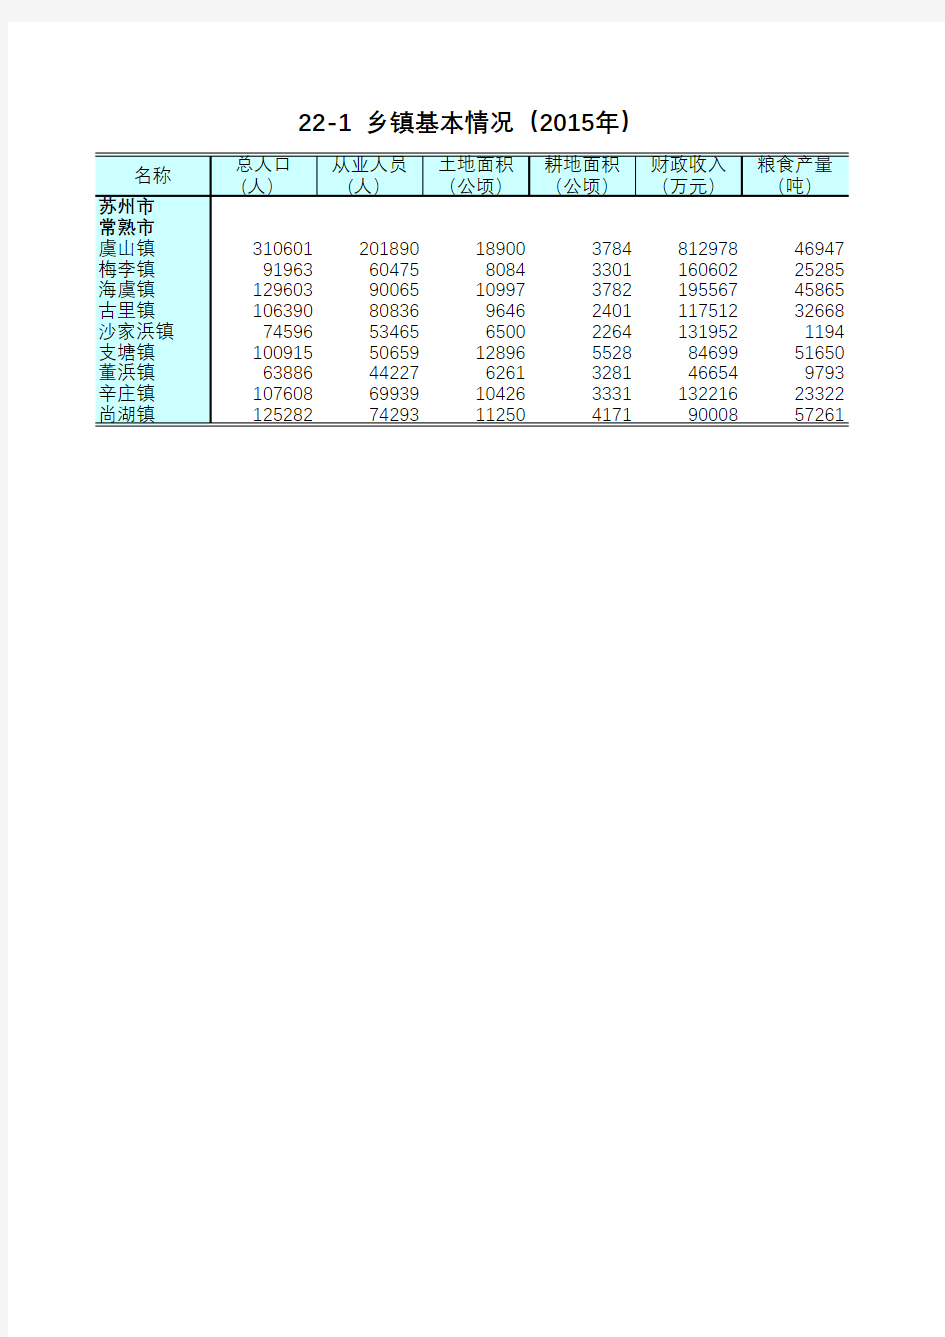 江苏统计年鉴2016社会经济发展指标：乡镇基本情况2015年苏州市常熟市